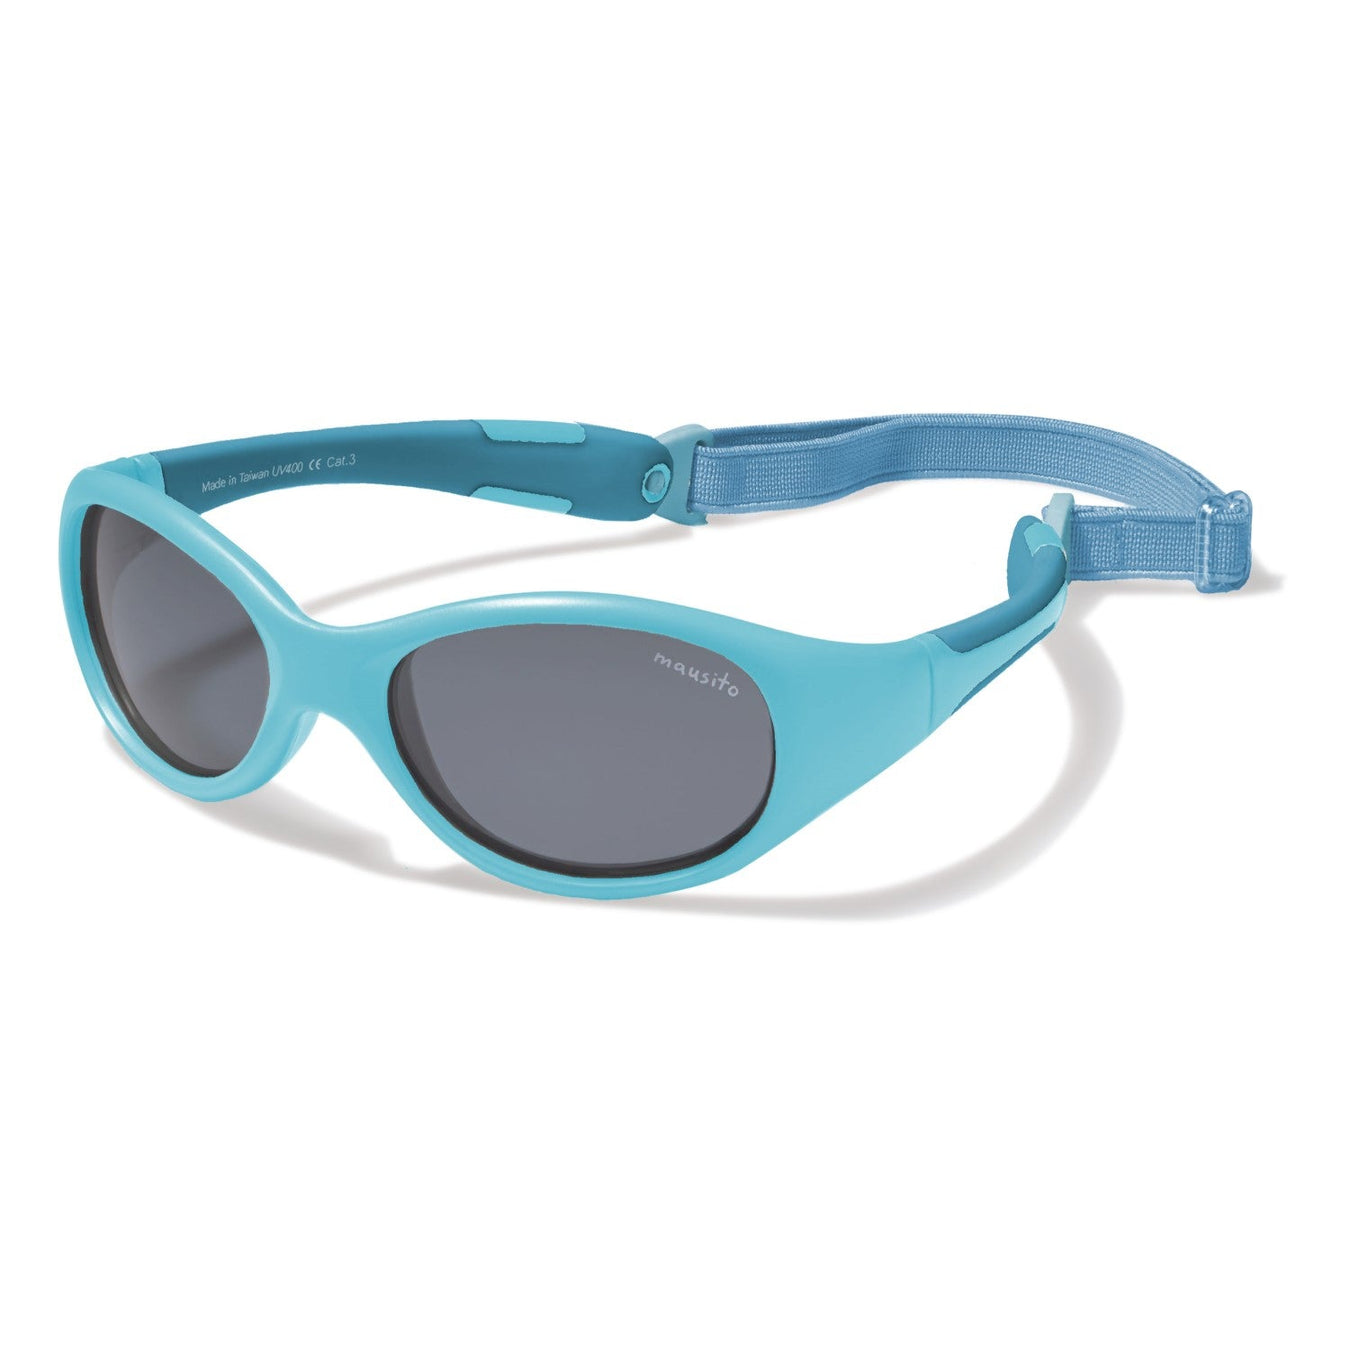 THE SURFER - MAUSITO - Kindersonnenbrillen für Jungen und Mädchen